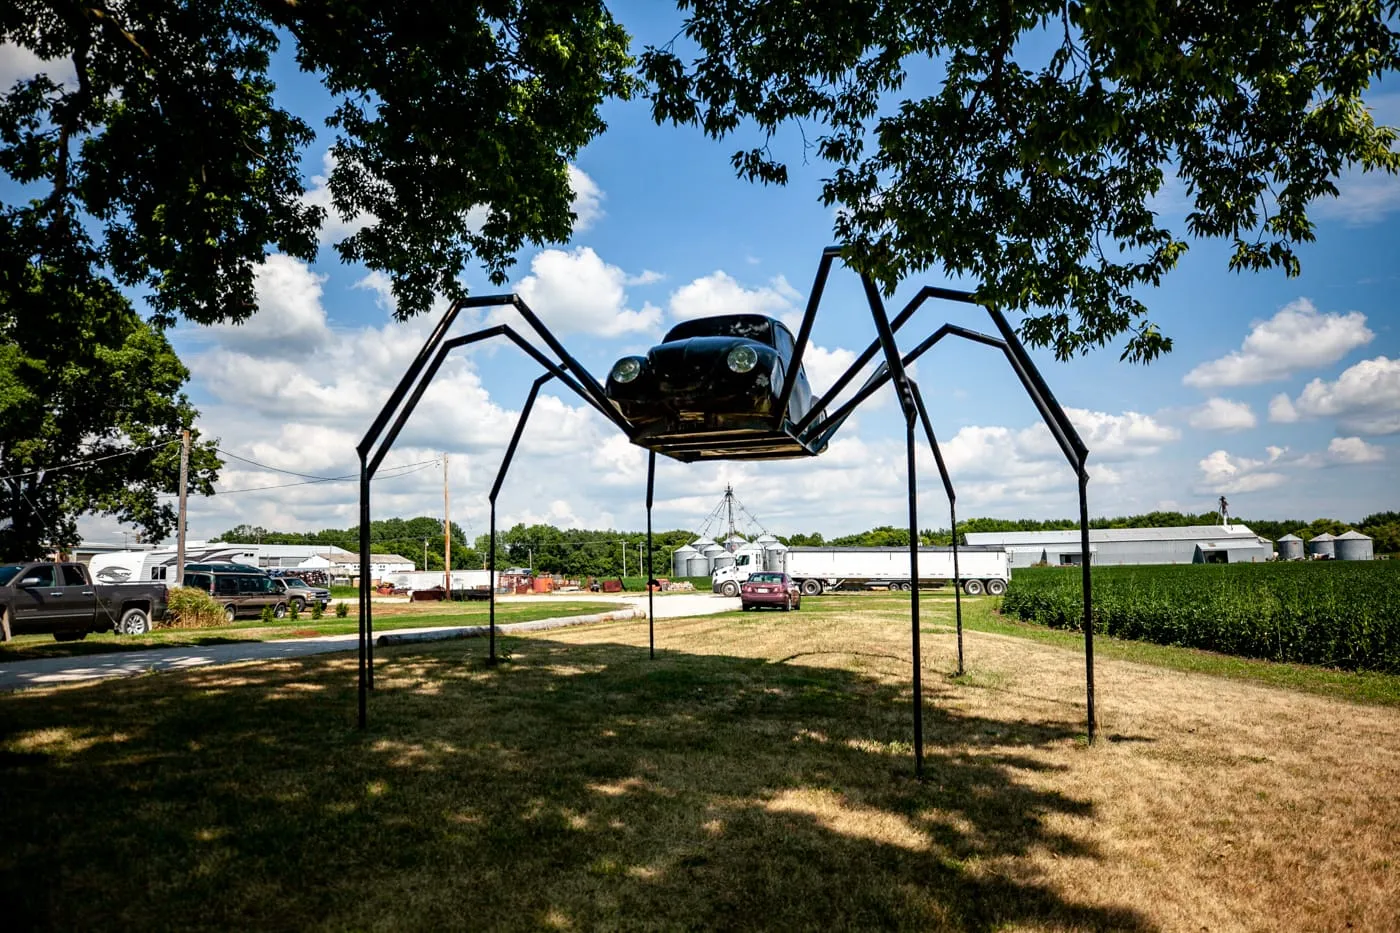 Giant Volkswagen beetle spider in Avoca, Iowa. |Iowa Roadside Attractions.